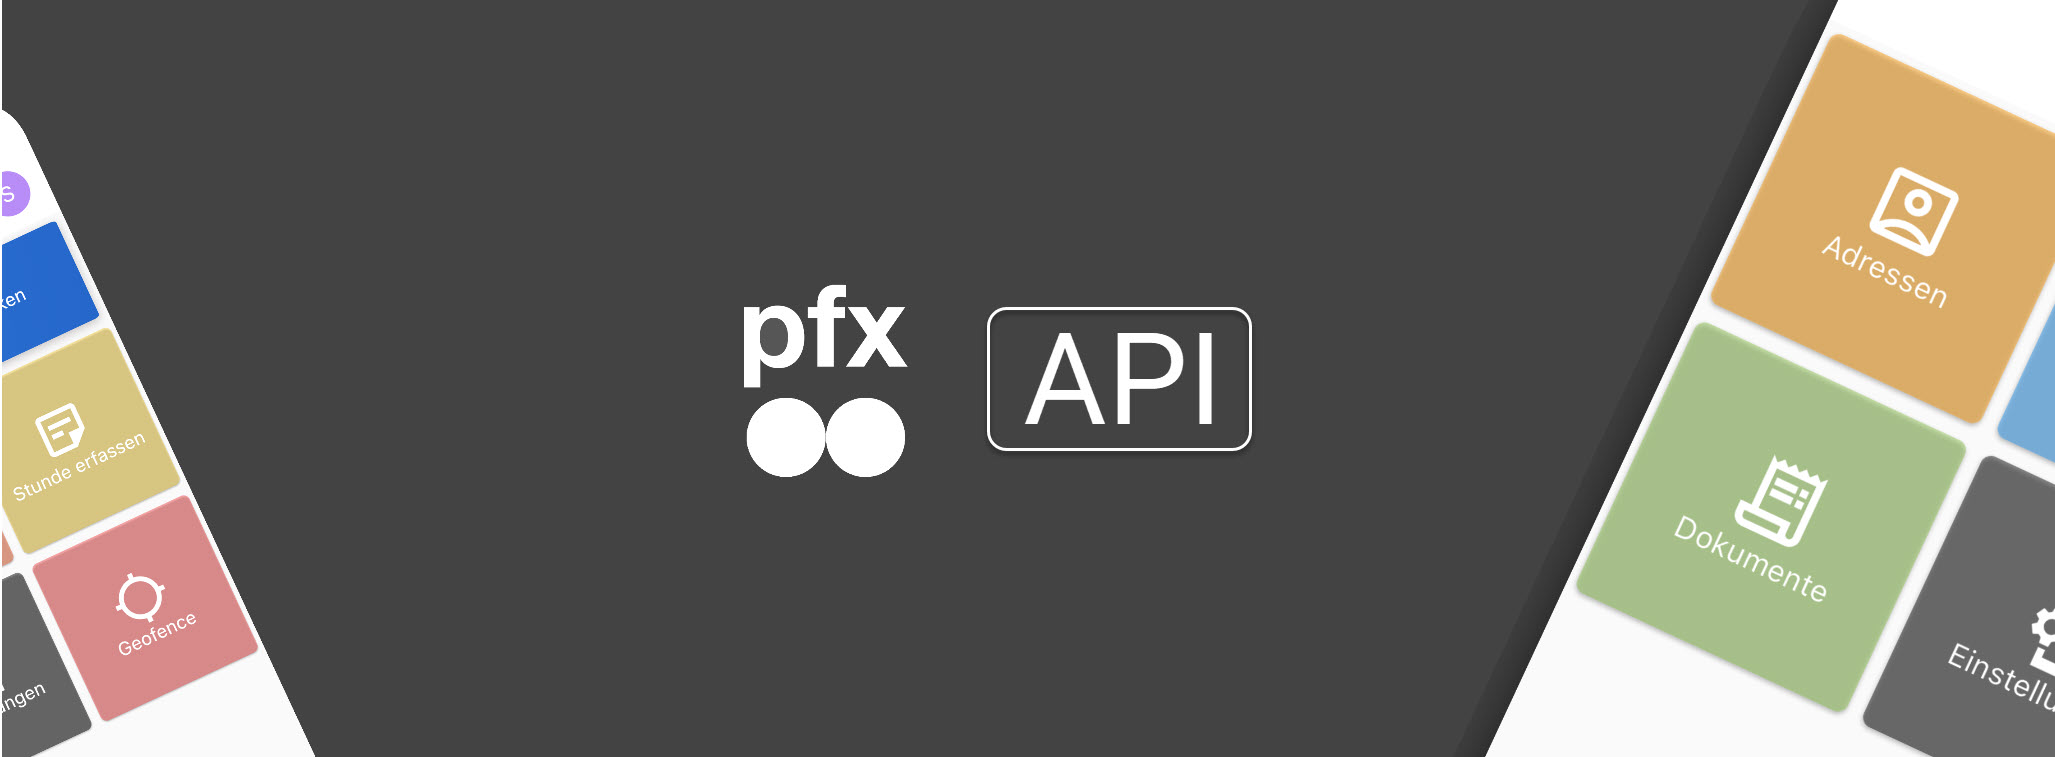 pfx API